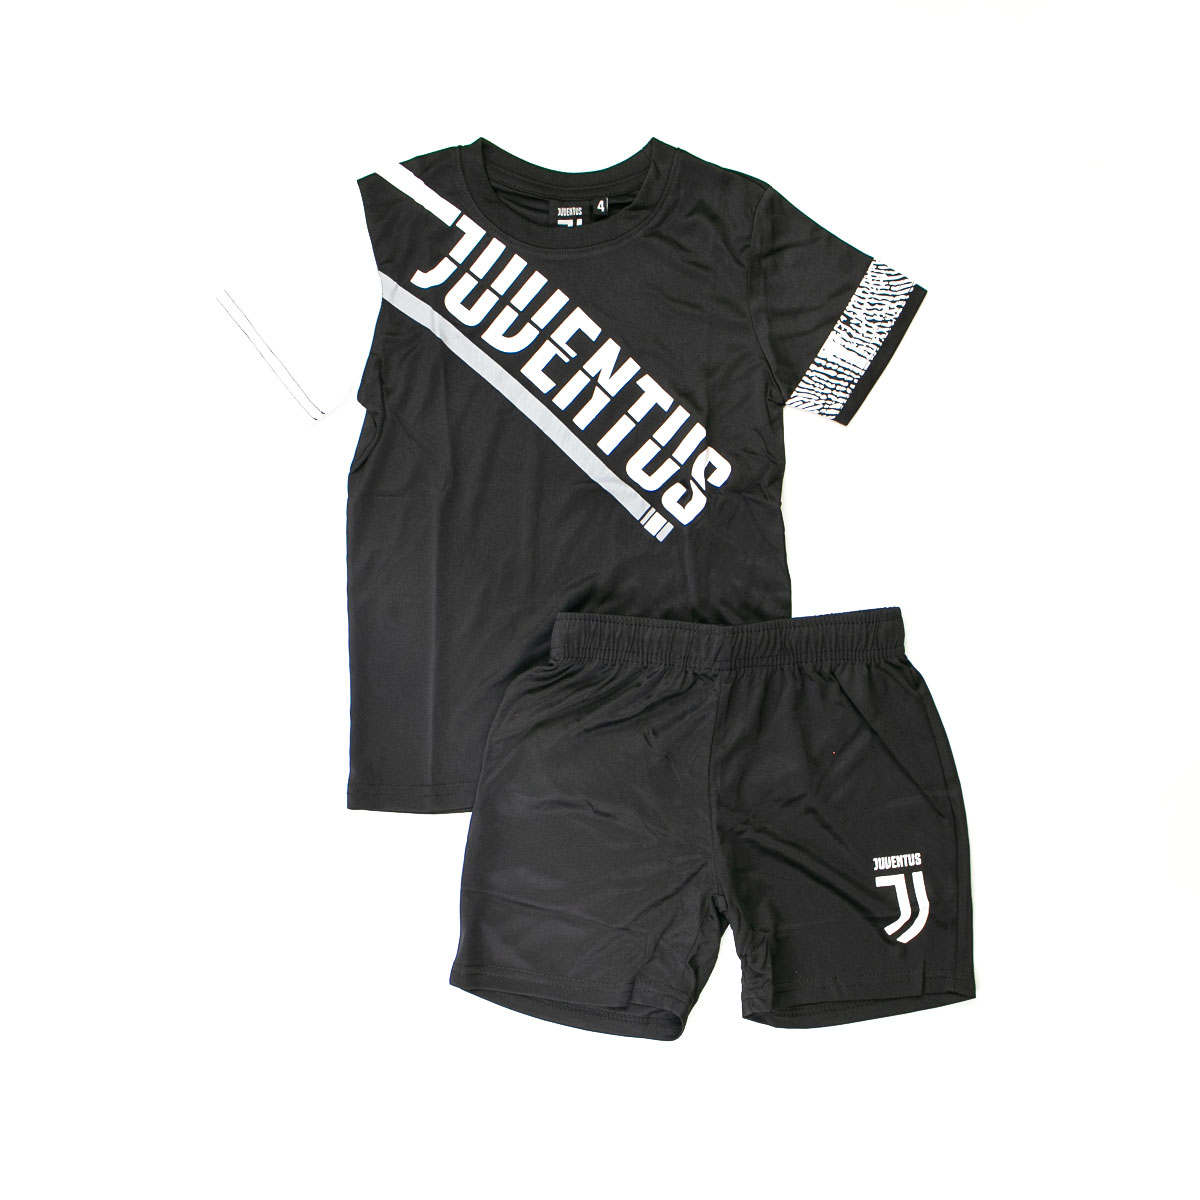 חליפות כדורגל לילדים בנים Juventus